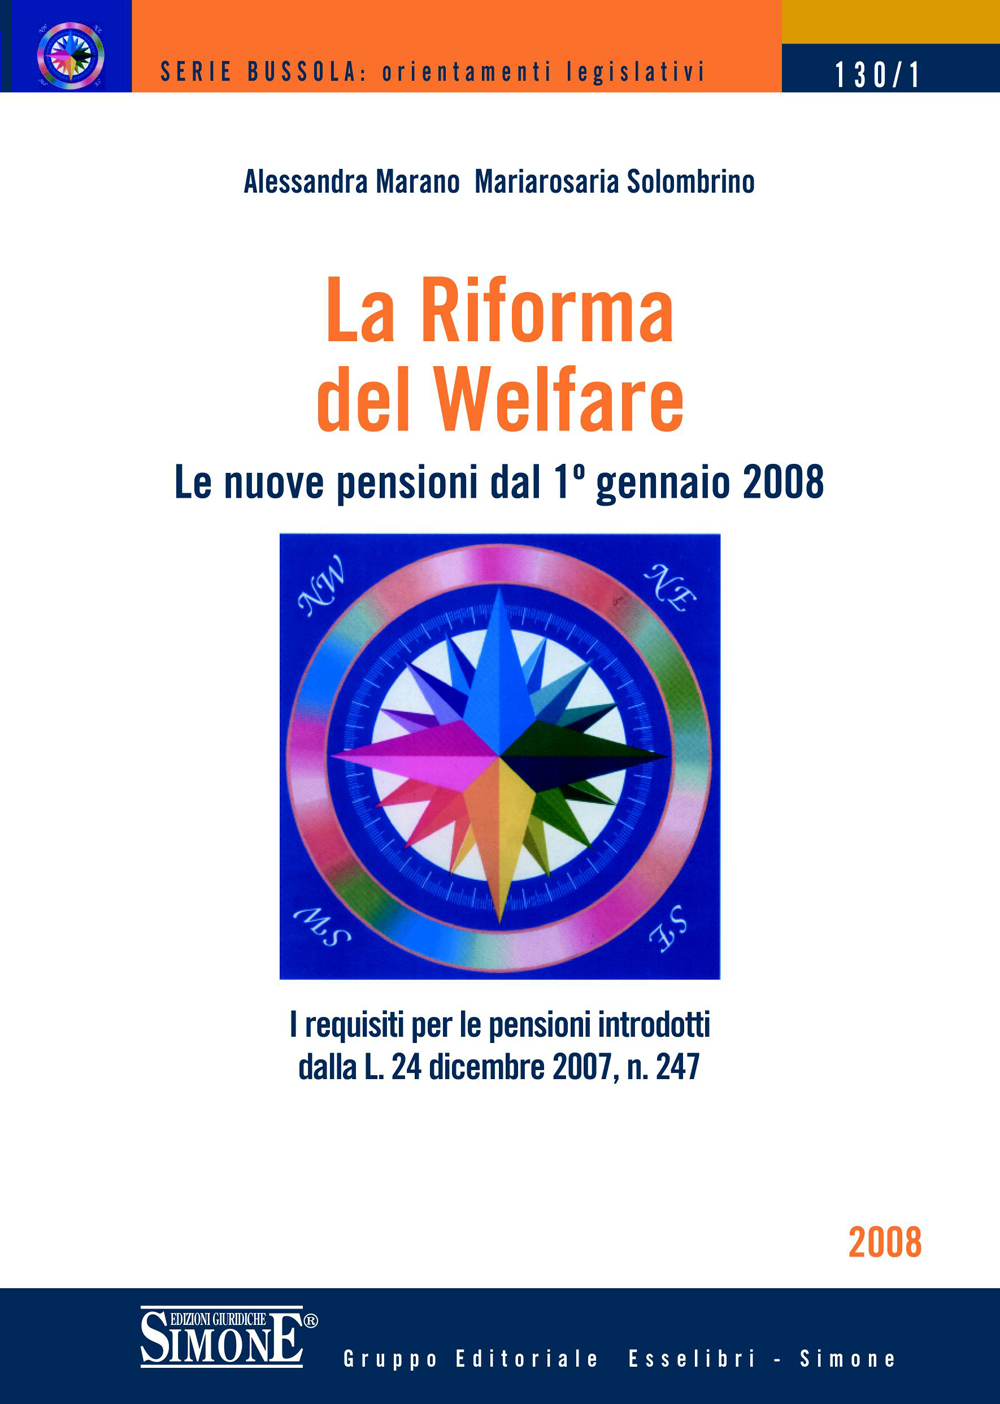 La Riforma del Welfare - 130/1